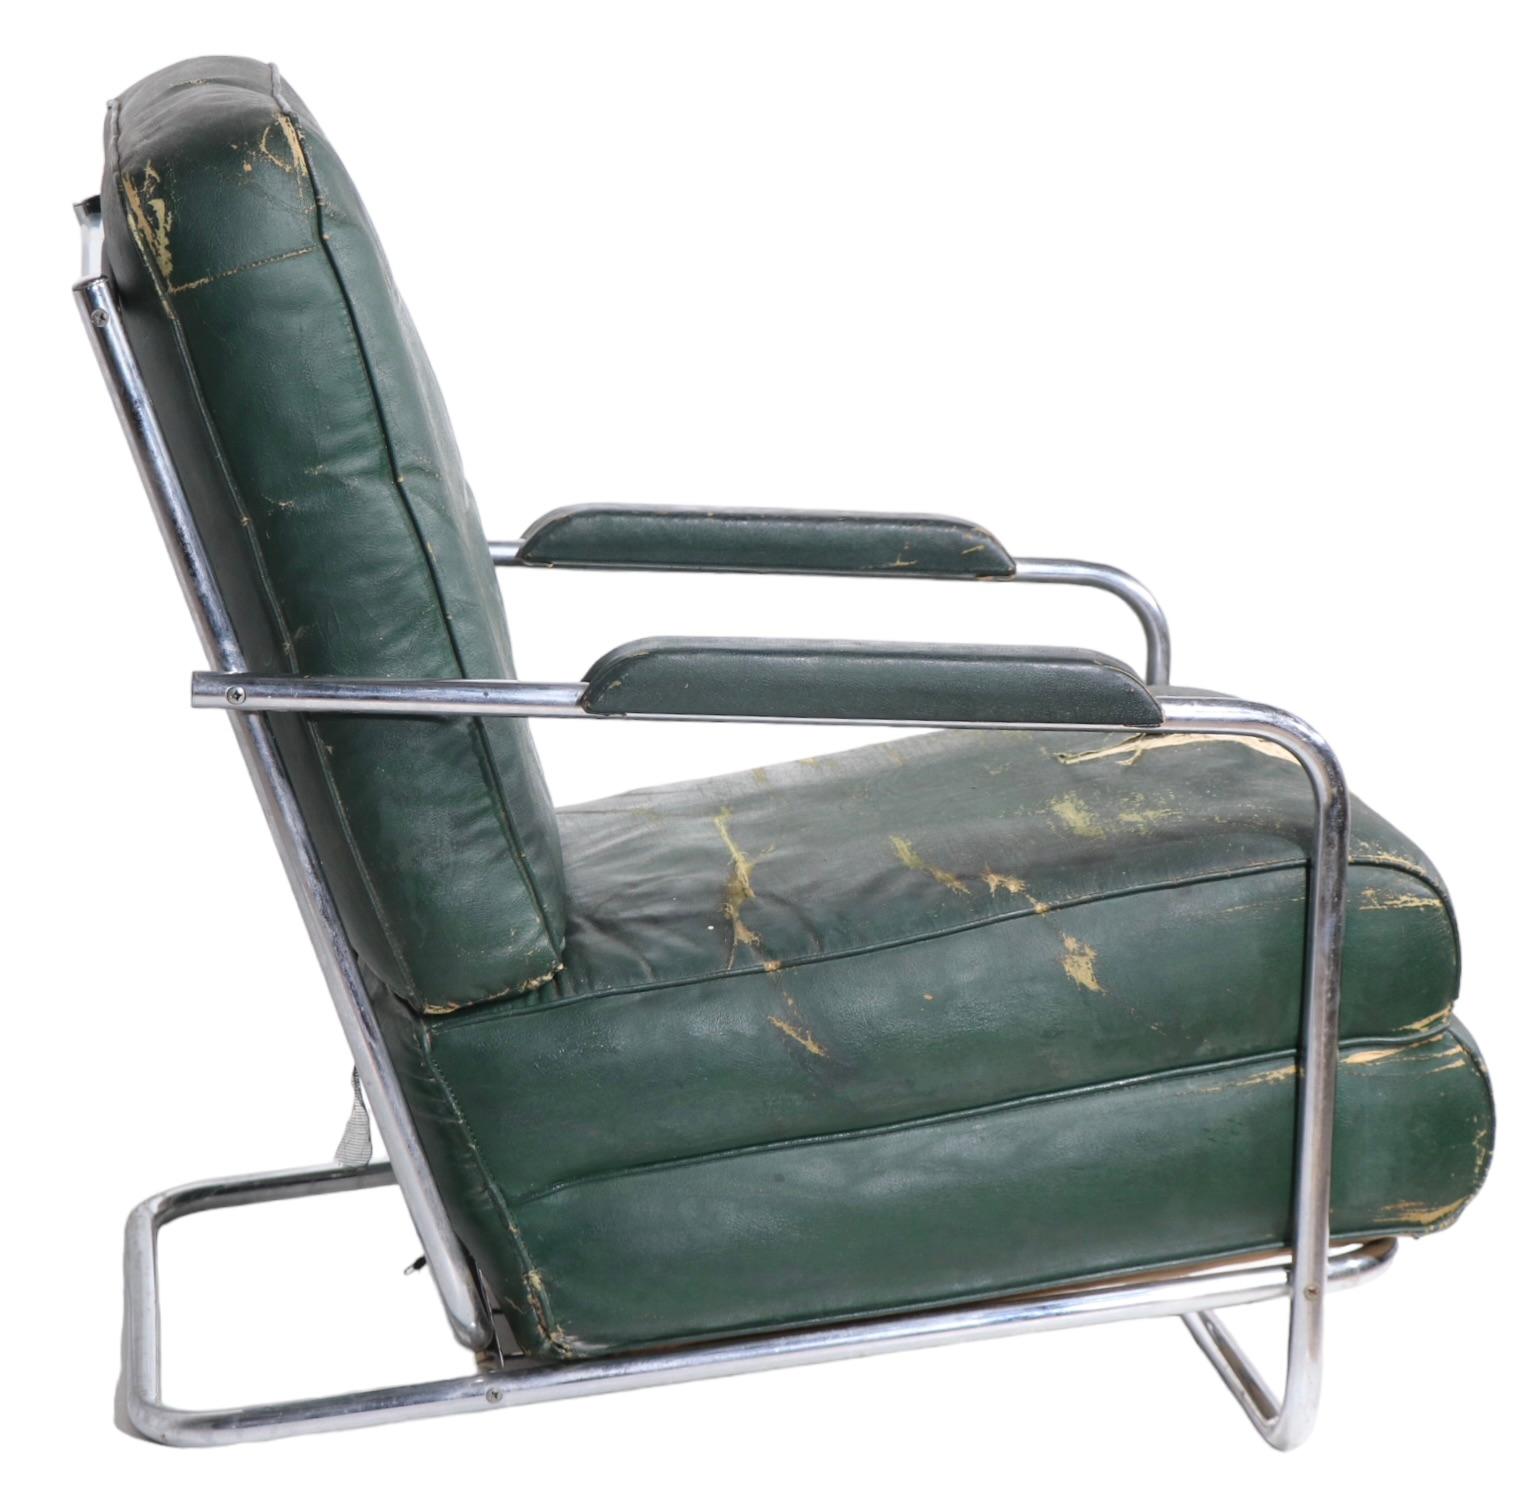 Ikonischer Art-Deco-Sessel aus dem Maschinenzeitalter, entworfen von Gilbert Rohde für die Troy Sunshade Company um 1930. Der Stuhl hat ein sexy Chromrohrgestell mit großen gepolsterten Kissen,  das Original-Öltuchgewebe  weist deutliche